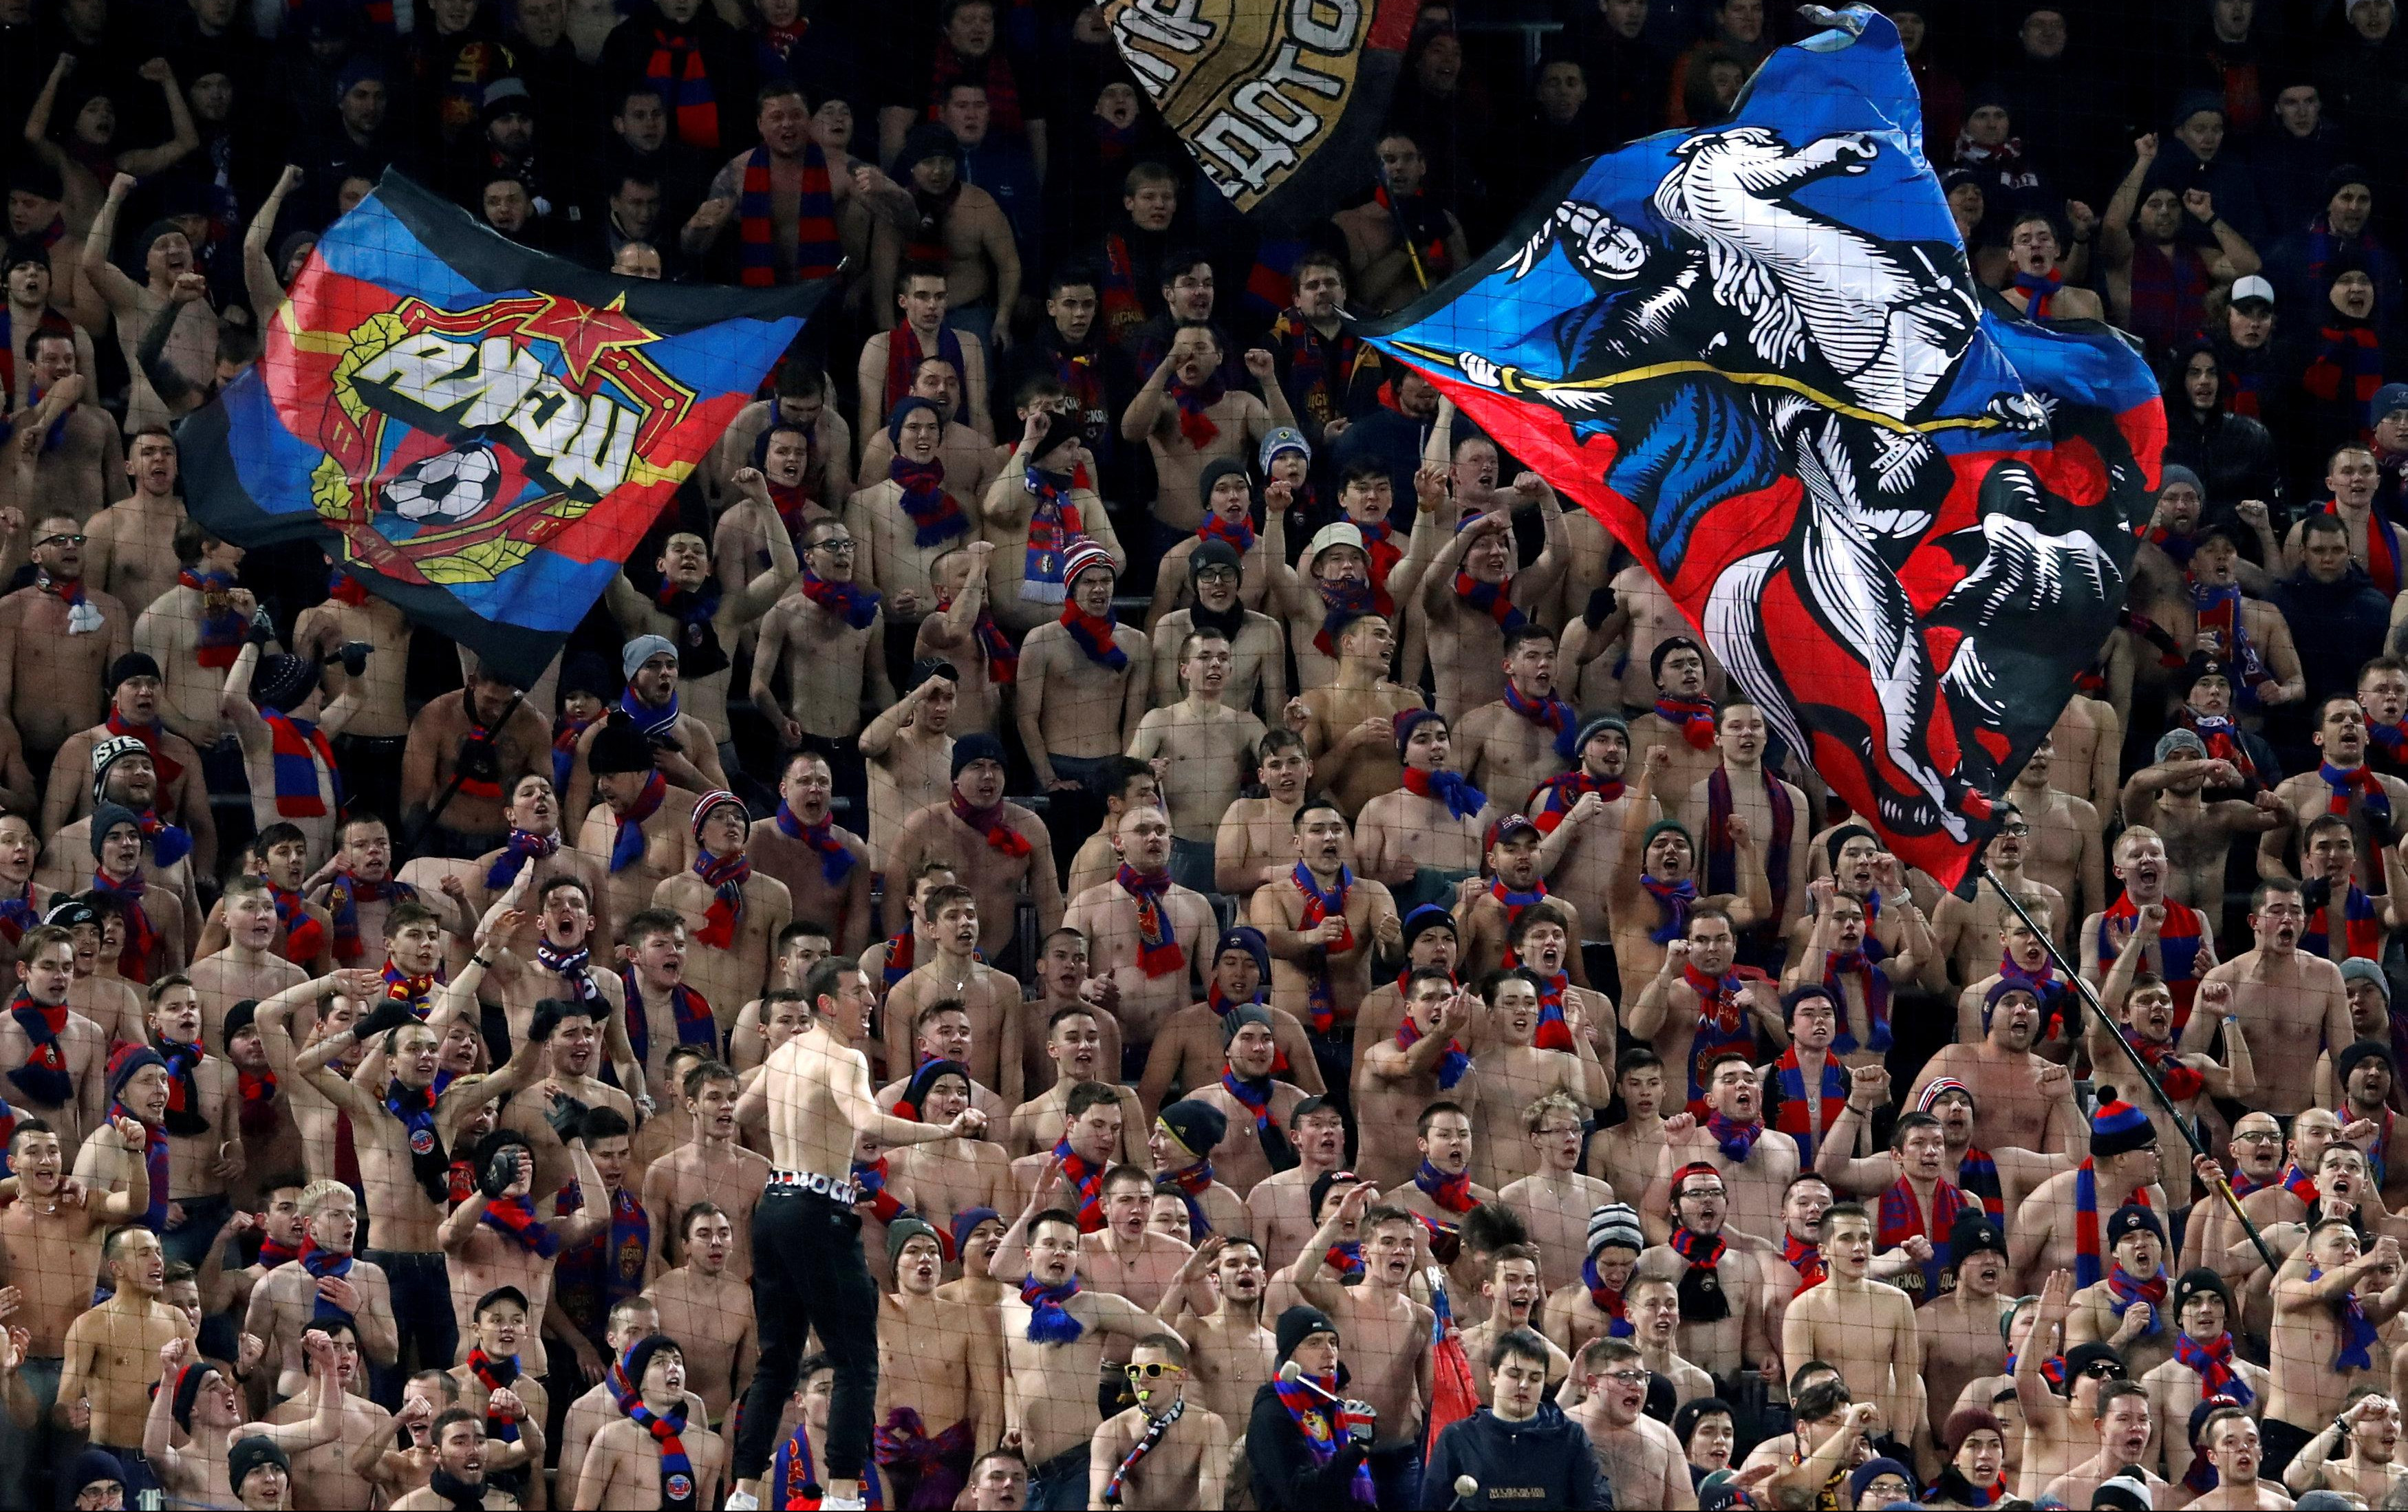 RUSI STIGLI U BEOGRAD! Navijači CSKA se okupljaju u centru Beograda i kreću na "Marakanu"!